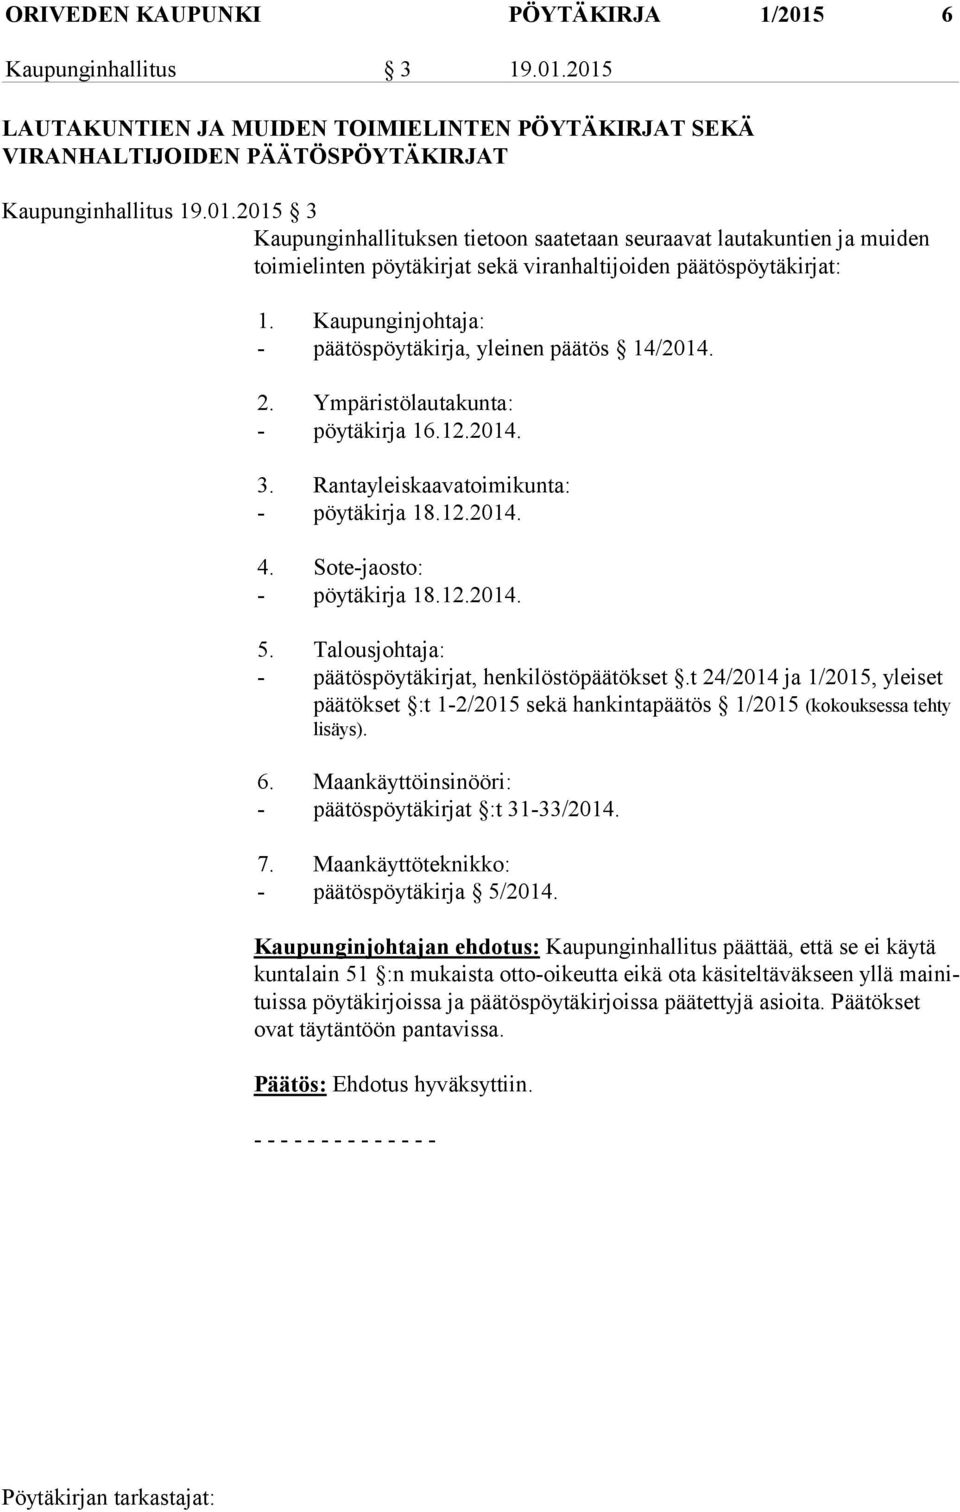 12.2014. 5. Talousjohtaja: - päätöspöytäkirjat, henkilöstöpäätökset.t 24/2014 ja 1/2015, ylei set päätökset :t 1-2/2015 sekä hankintapäätös 1/2015 (kokouksessa tehty lisäys). 6.